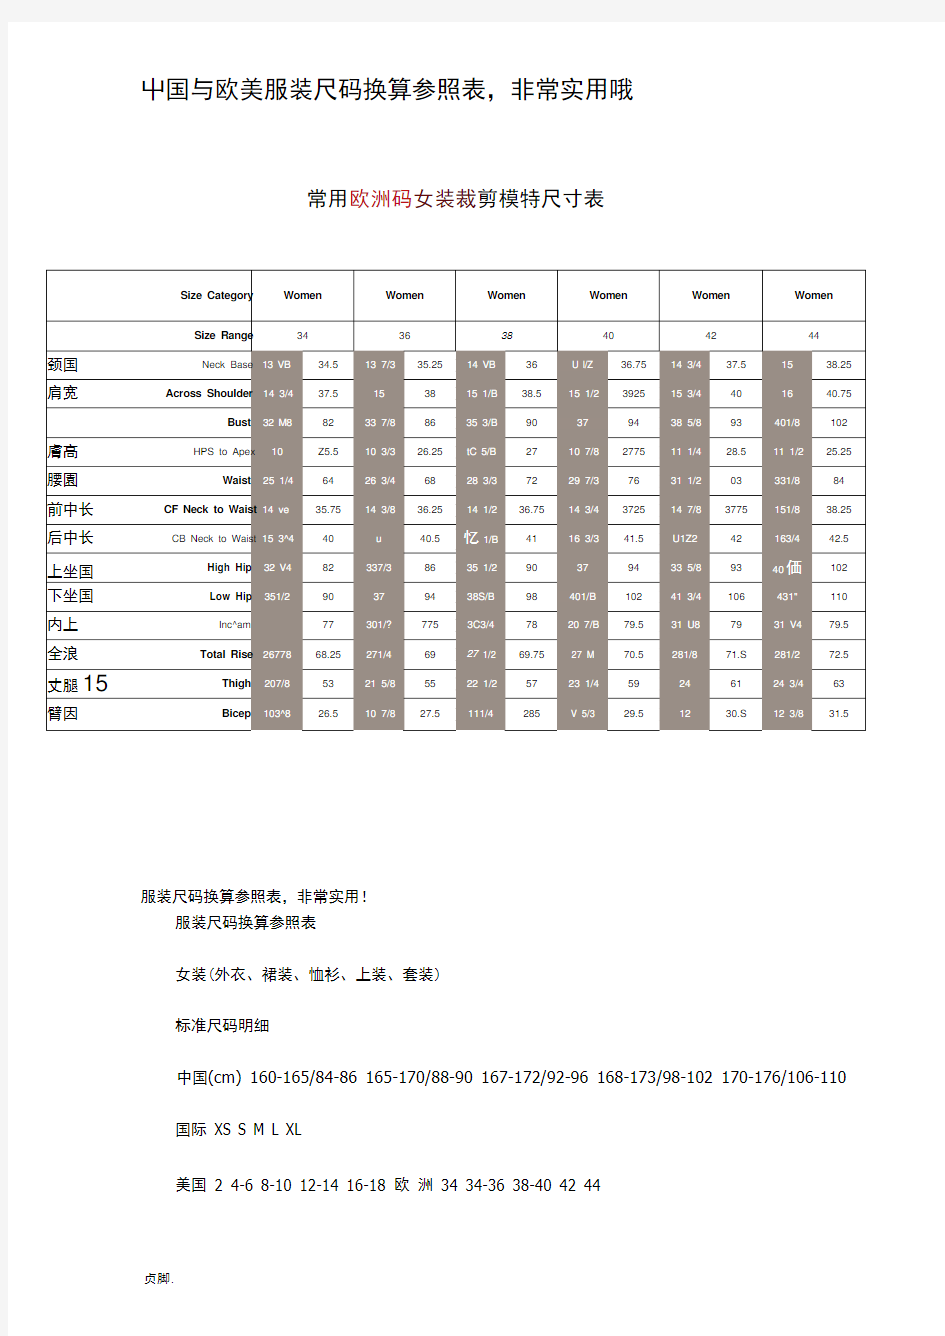 中国与欧美服装尺码换算参照表